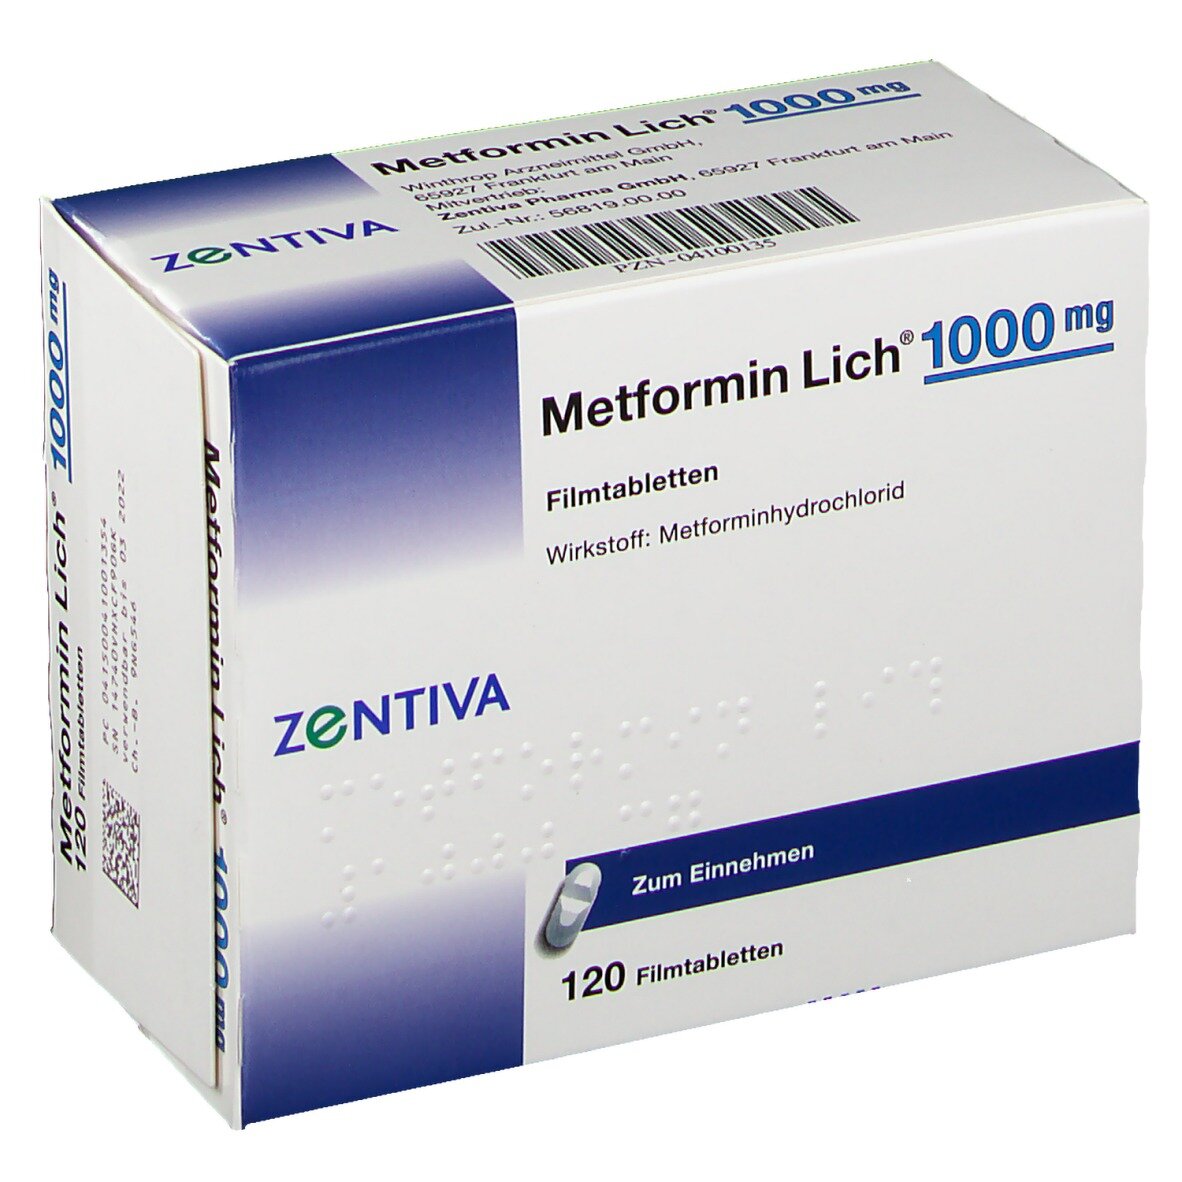 Метформин после 60. Метформин 500. Метформин 500 мг синяя упаковка. Метформин 1000. Метформин 1000 мг.